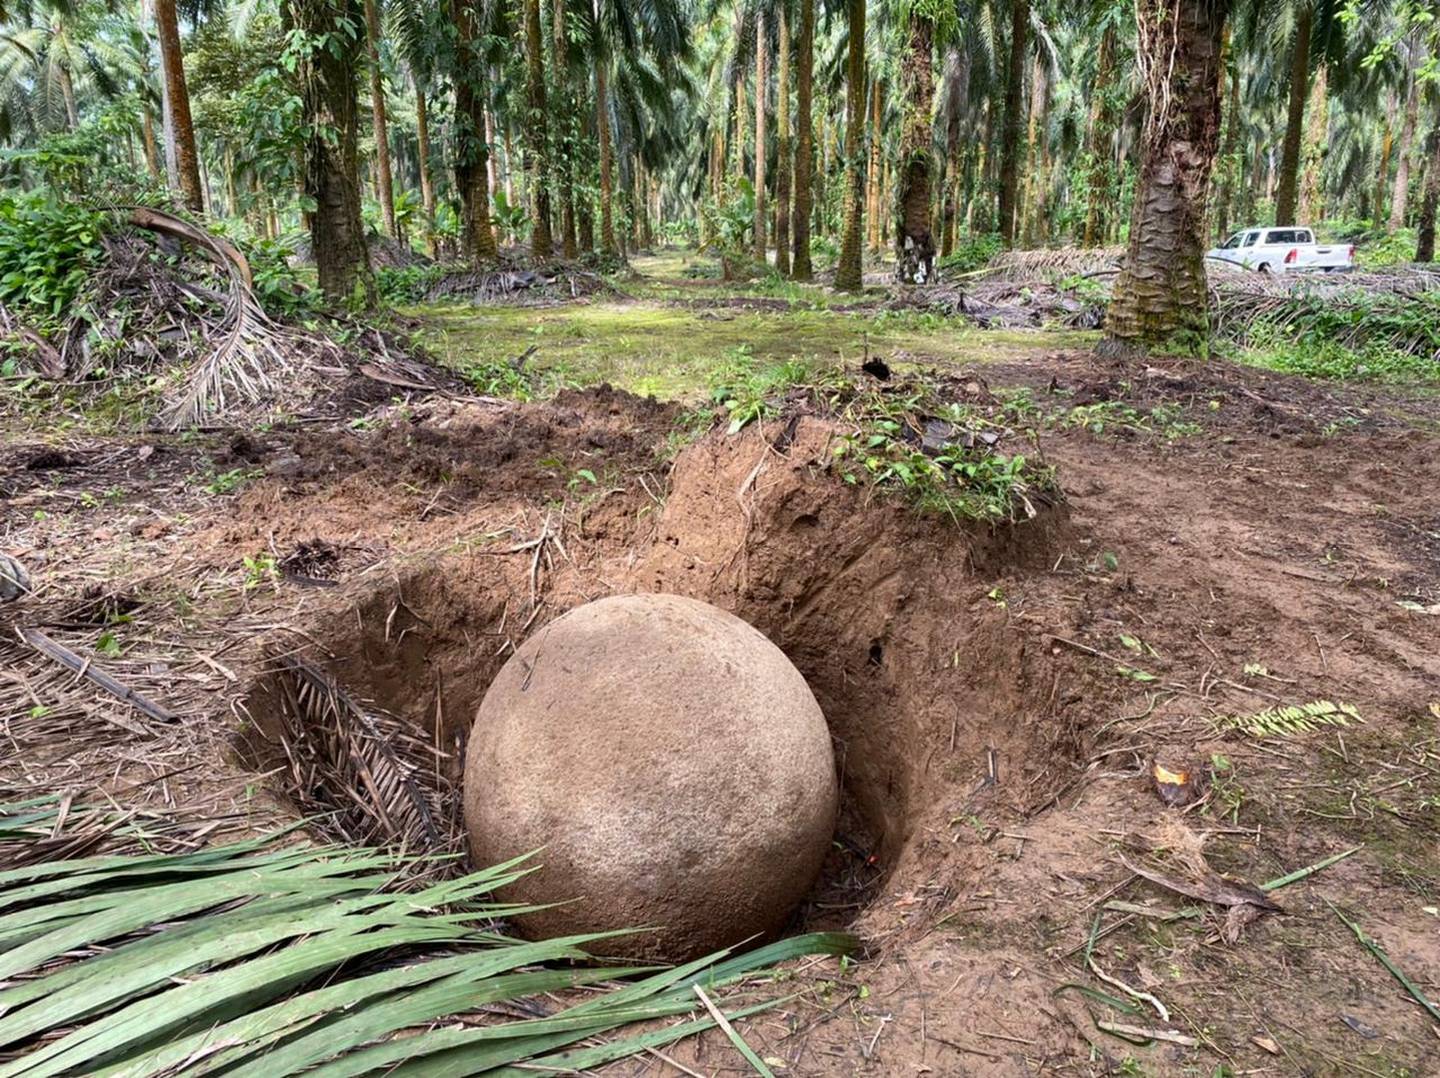 La esfera de piedra encontrada mide 1.23 metros de diámetro; está en perfecto estado de conservación y se ubica en una finca privada en el sector de Finca 12, en Palmar Sur de Osa, provincia de Puntarenas.